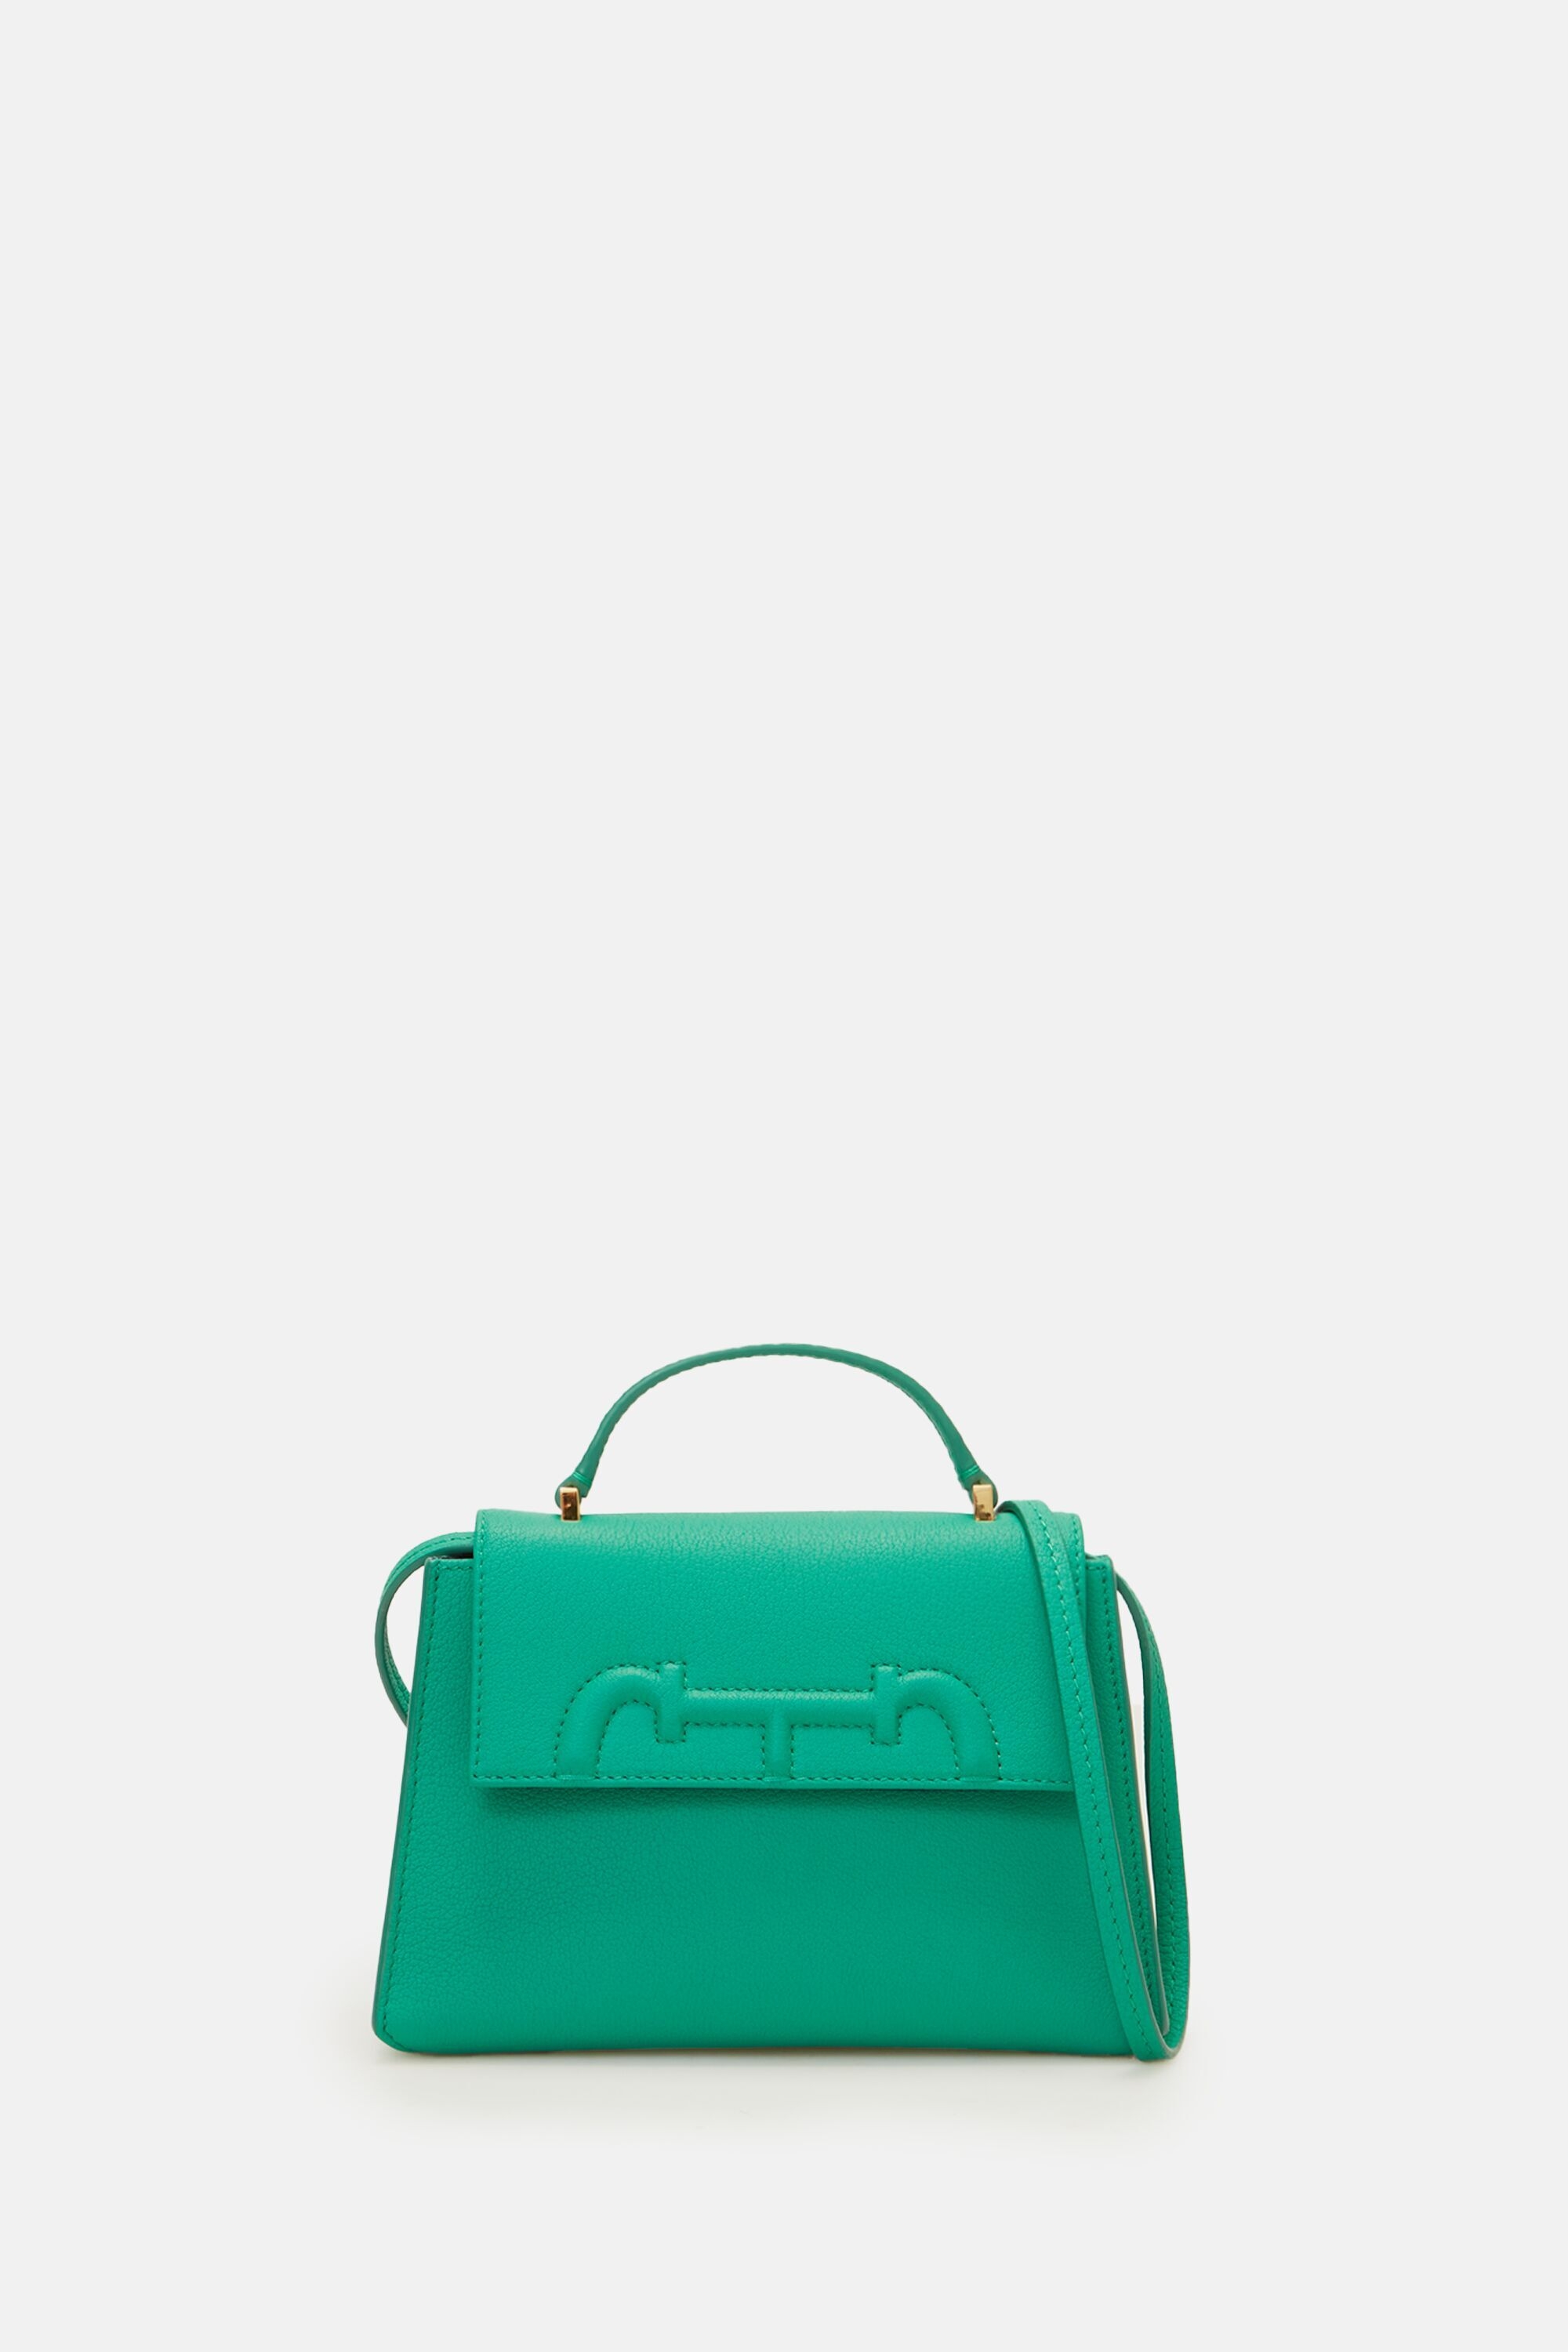 Tiny Doma Insignia Satchel | Mini handbag mint green - CH Carolina ...